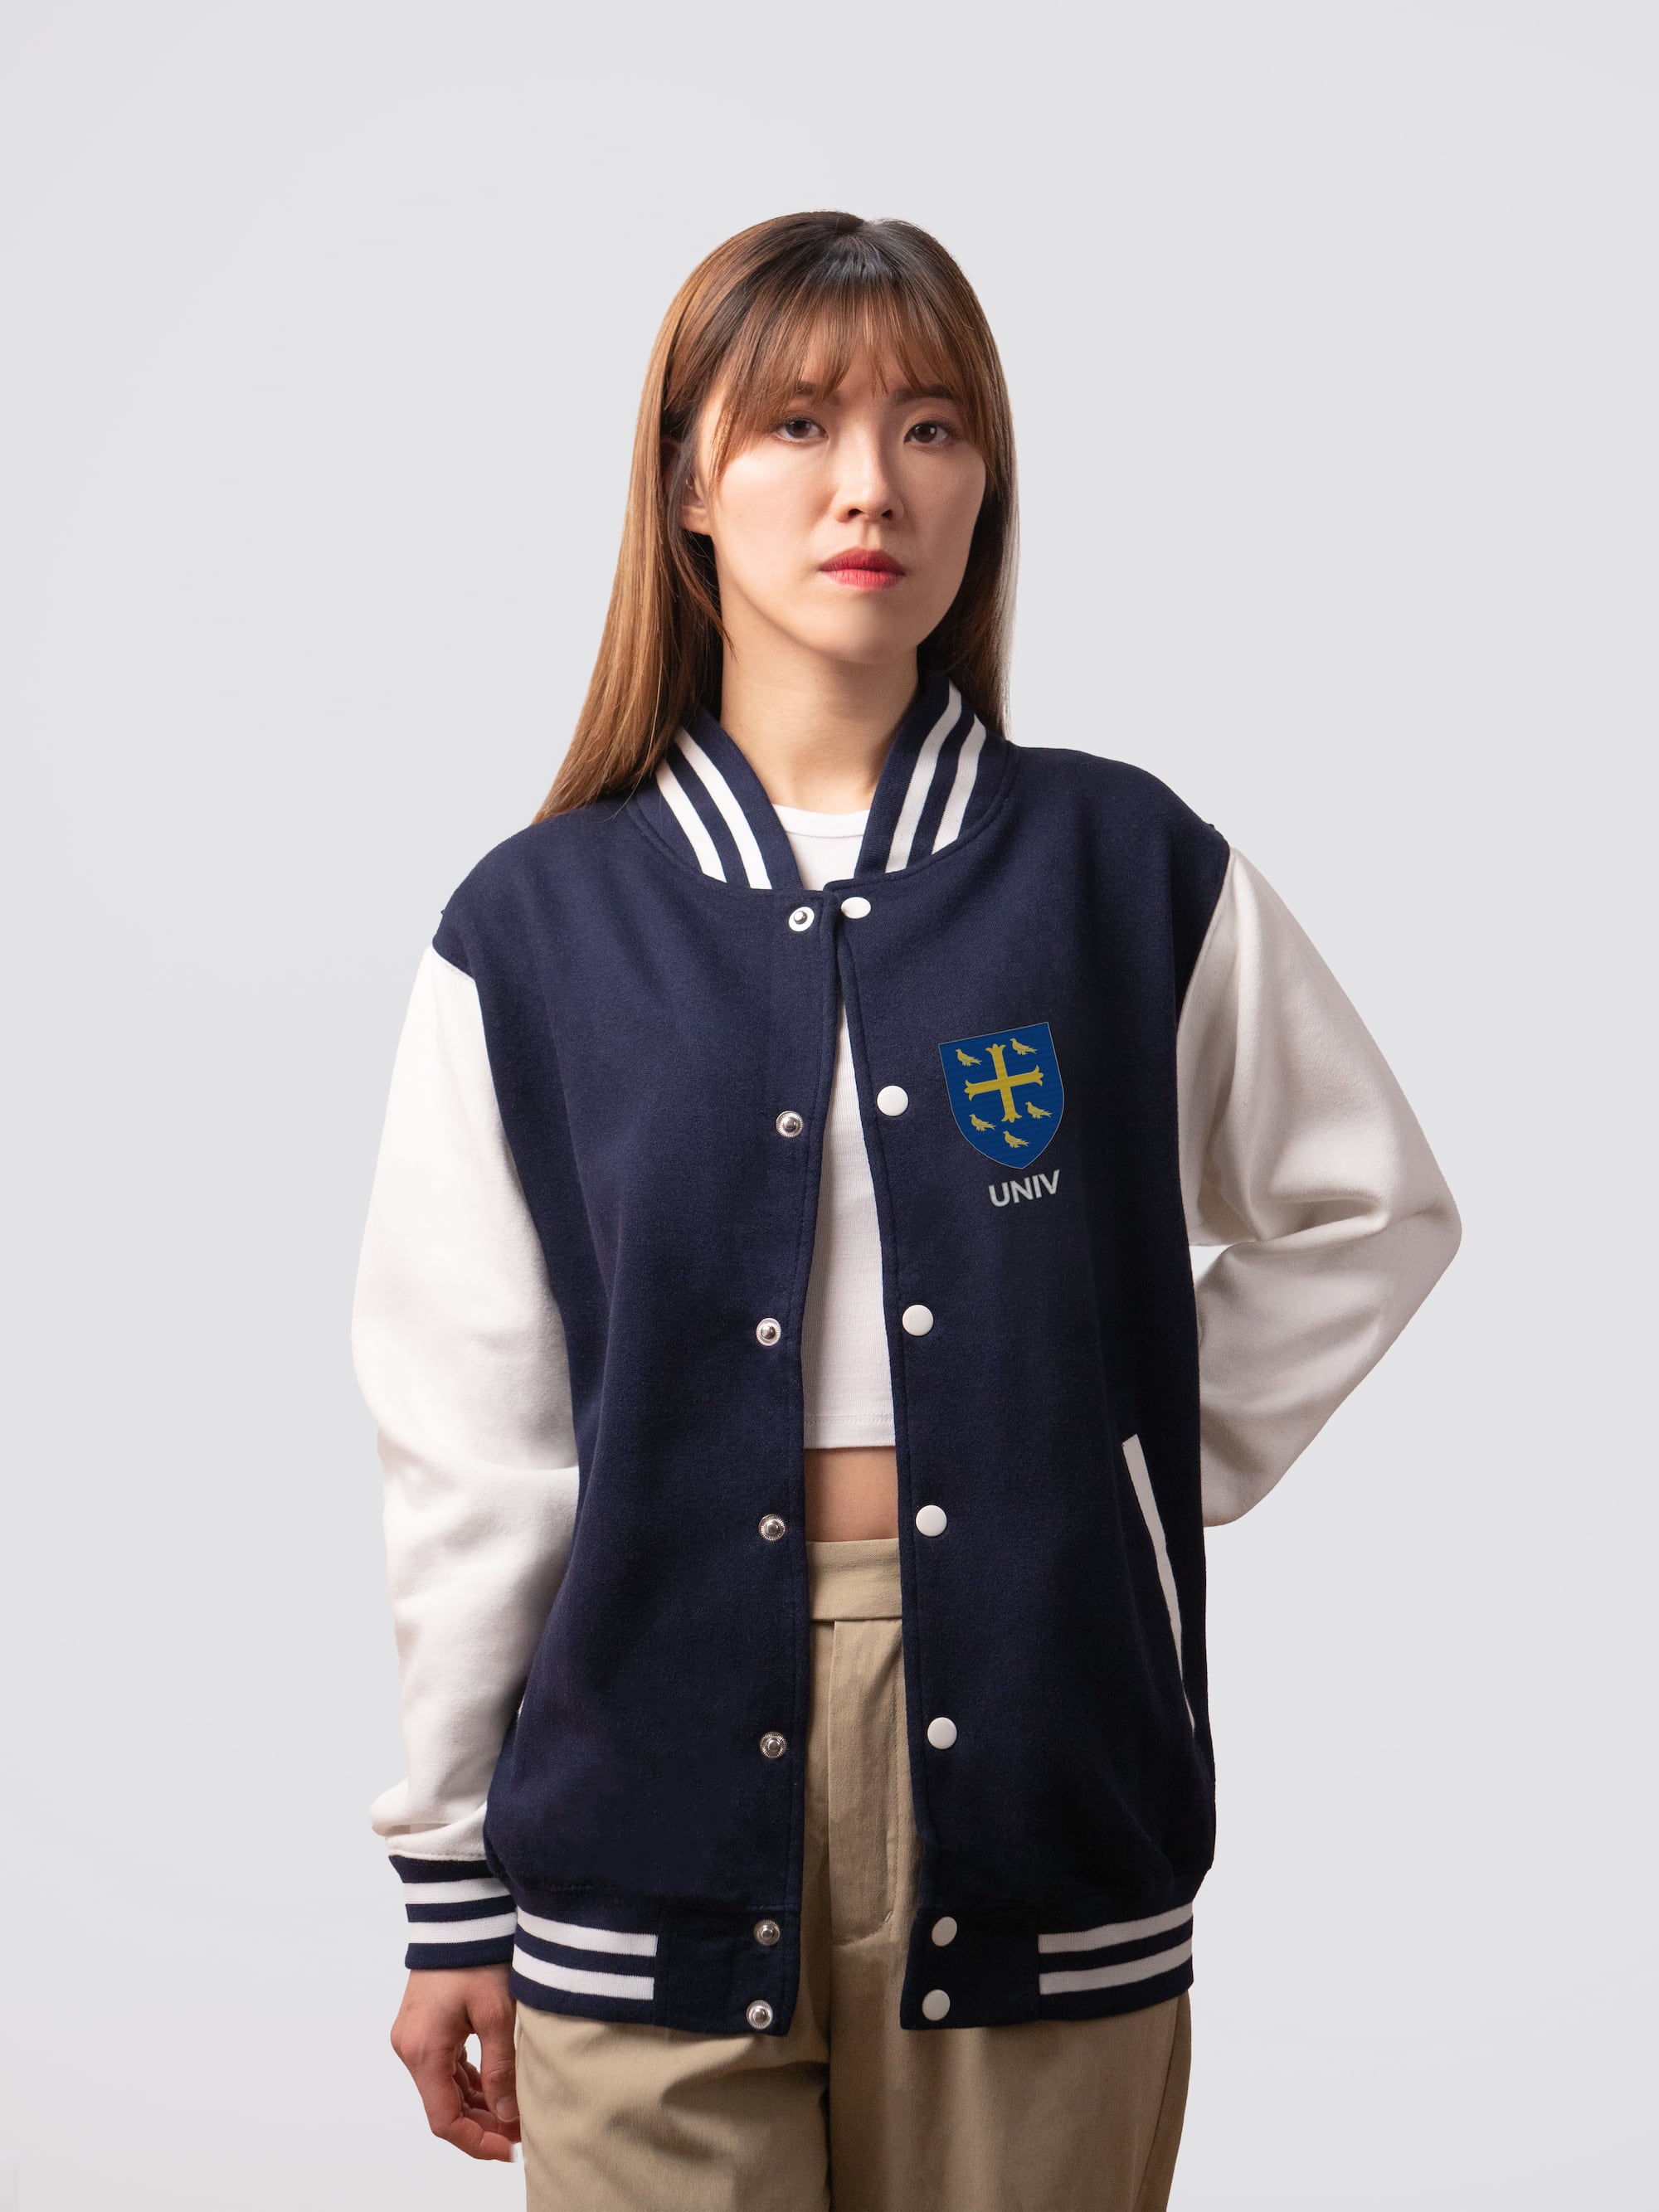 Retro style varsity jacket, with embroidered University crest